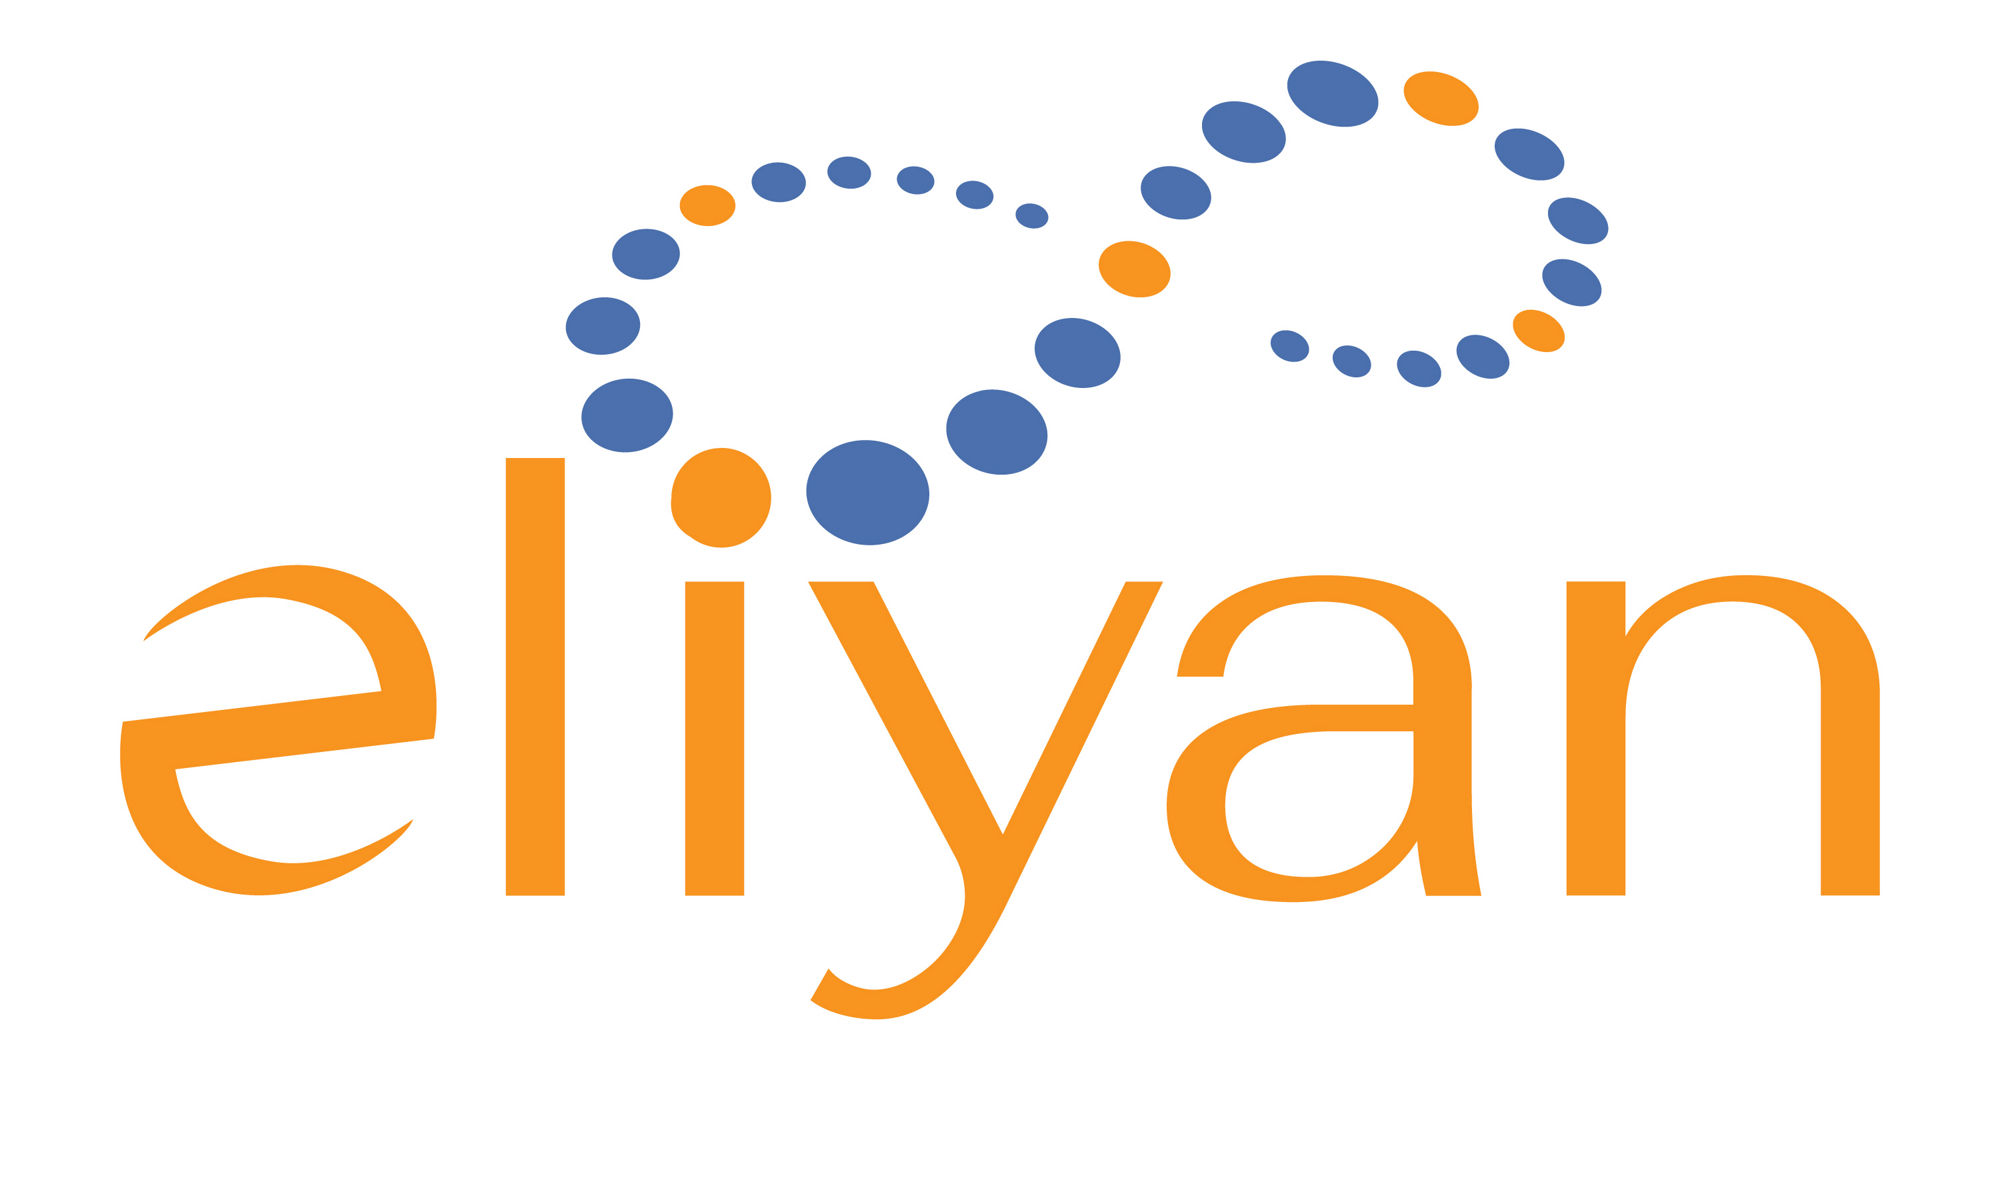 Eliyanの会社ロゴ